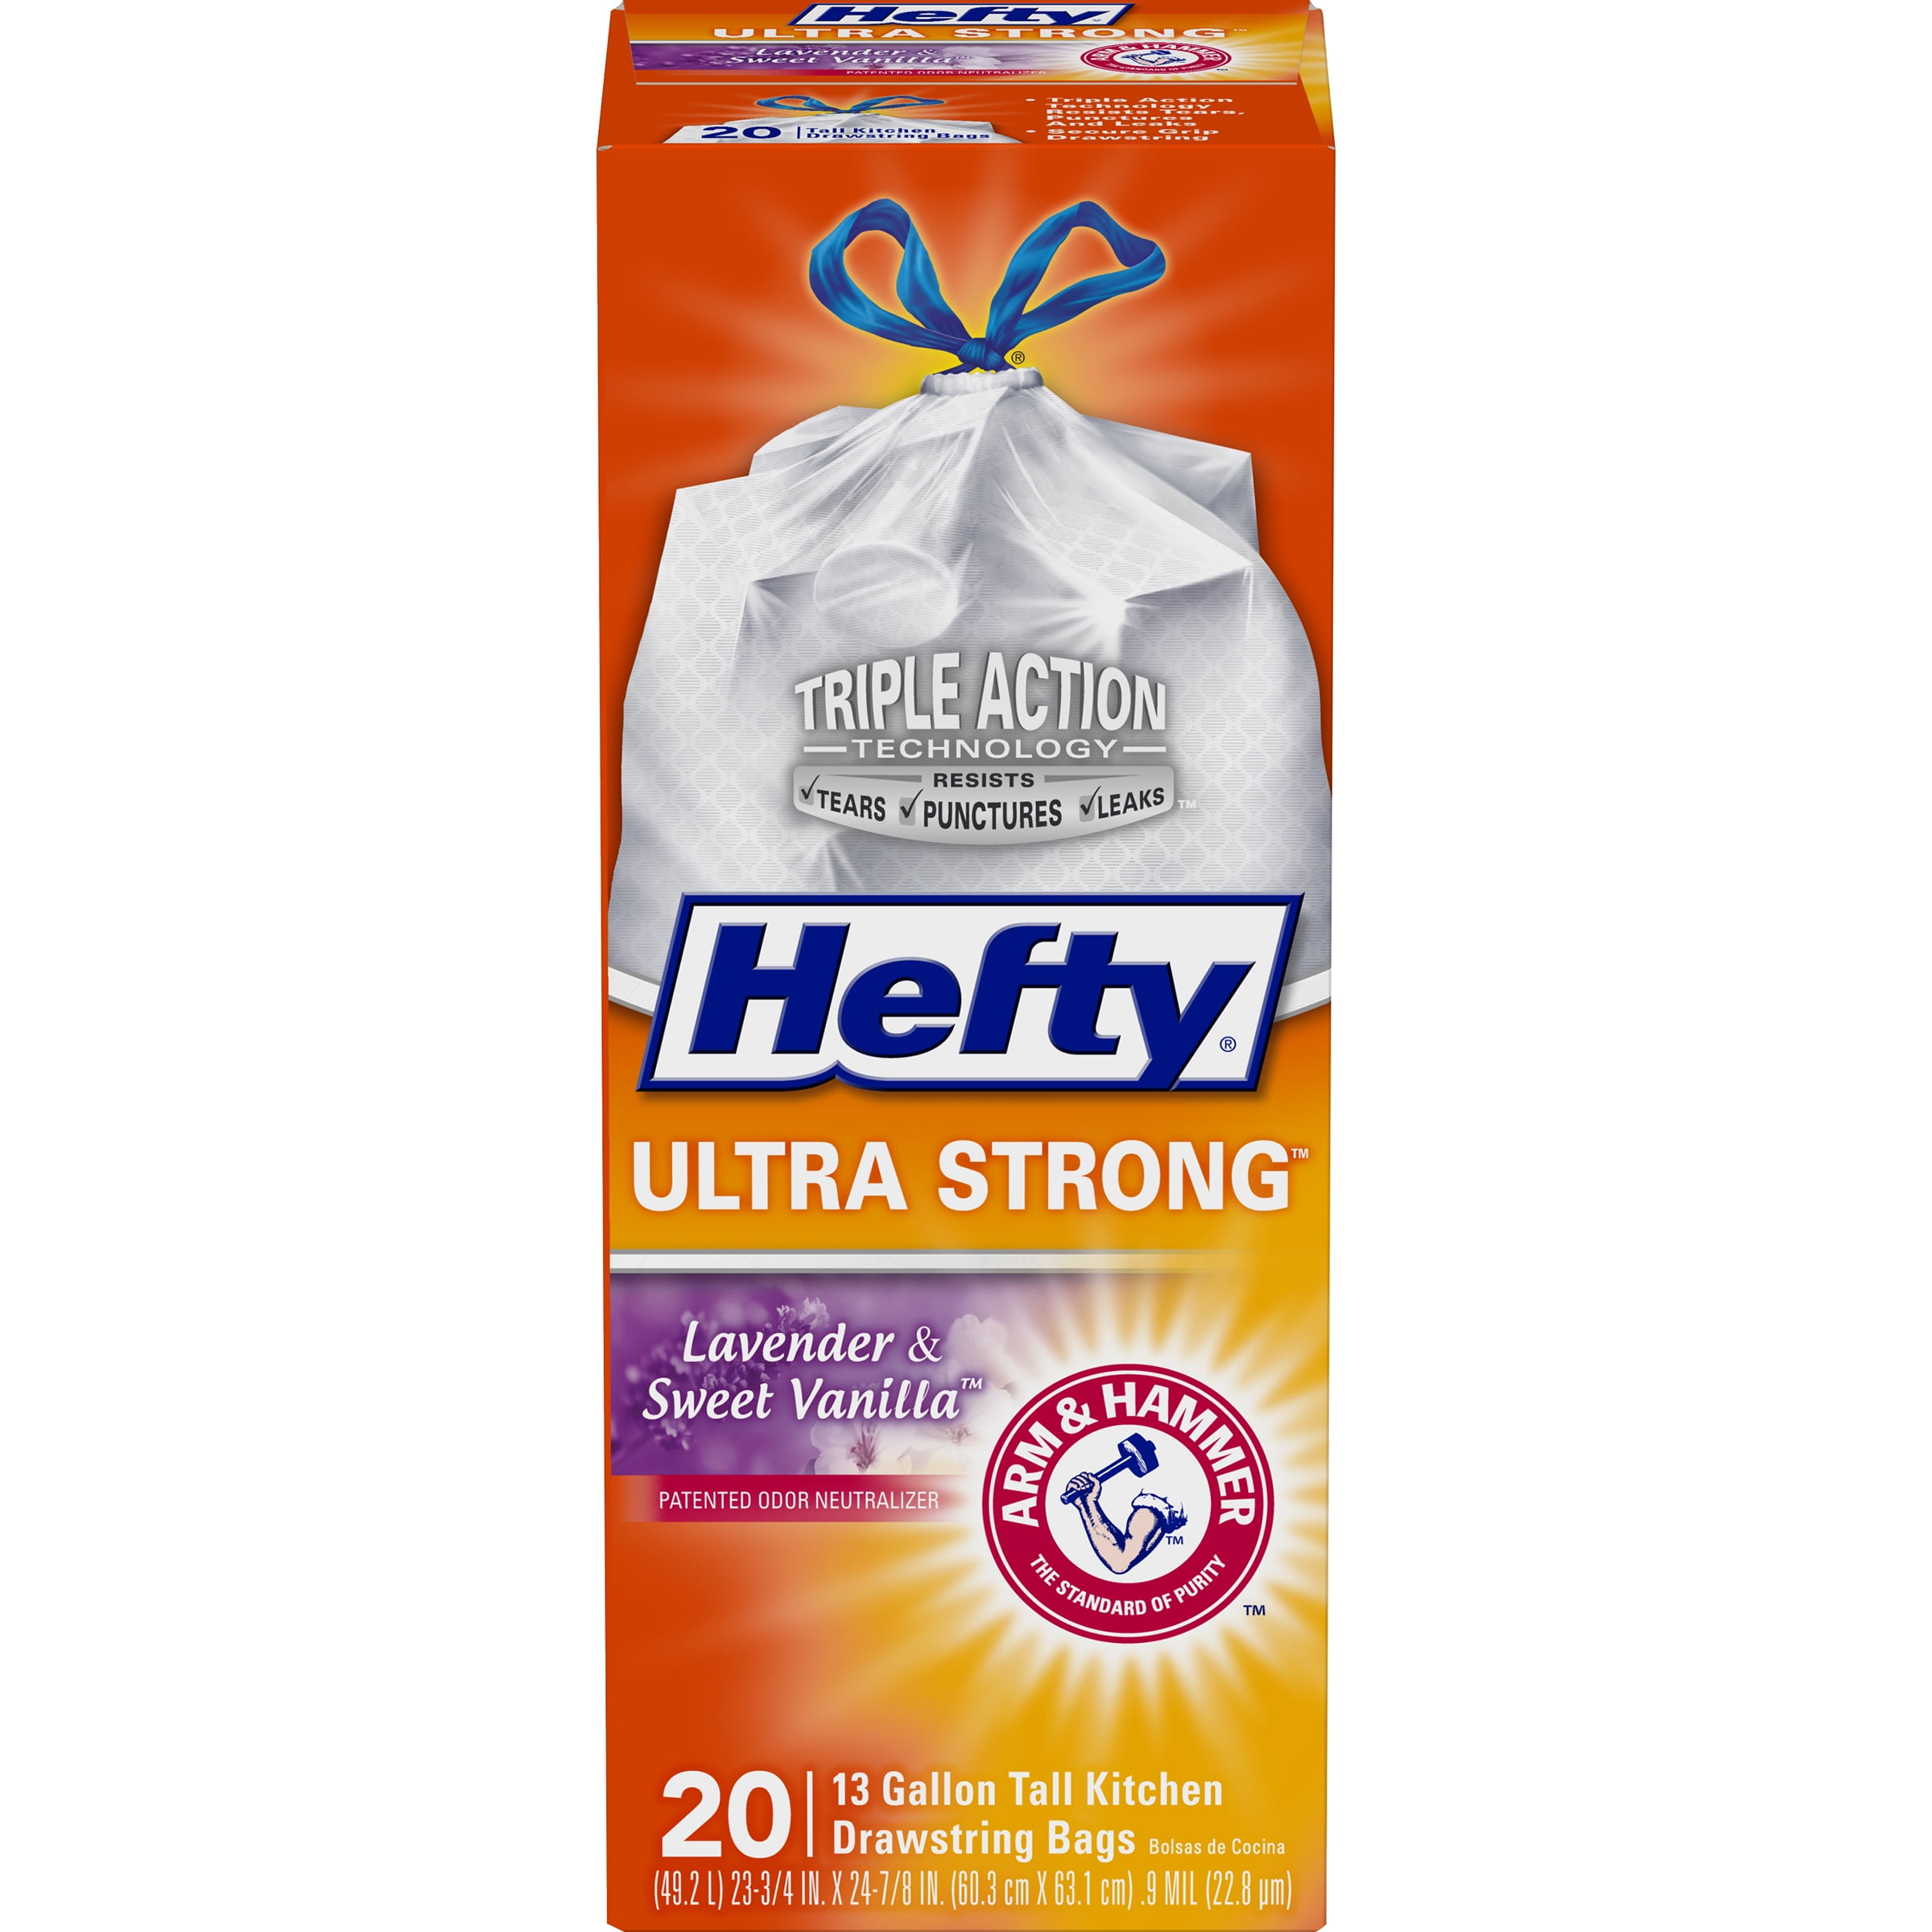 Hefty® Brings Back Fan-Favorite Hefty® Cinnamon Pumpkin Spice Ultra Strong™ Trash  Bags